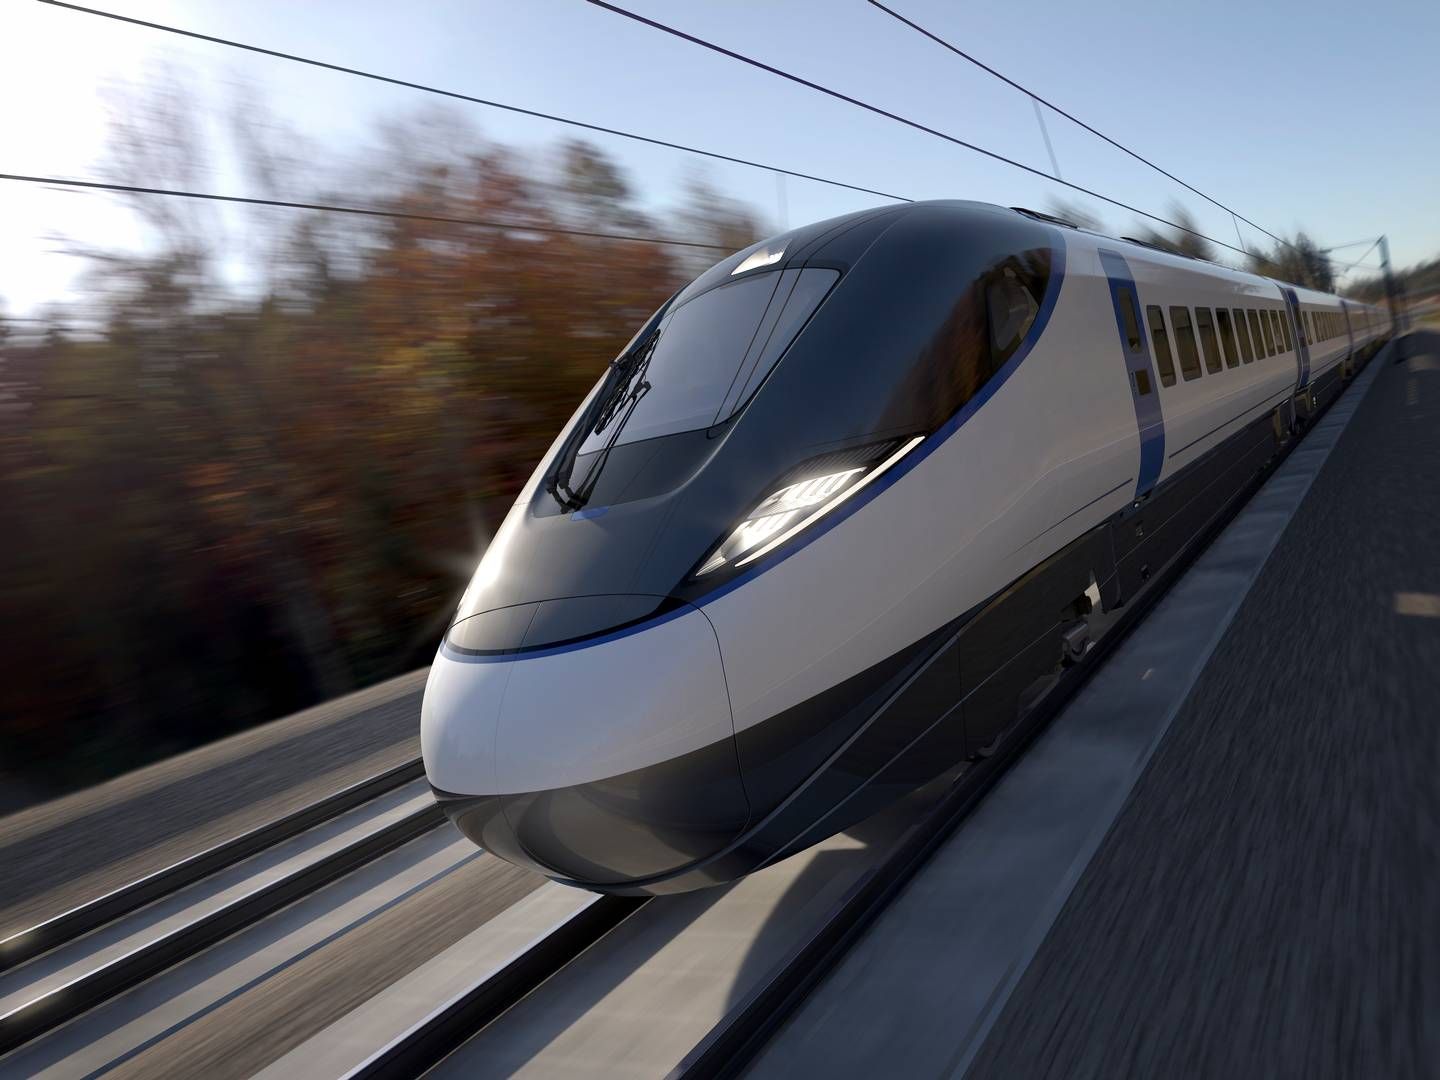 Planerne om udvidelses af det britiske tognet til højhastighedstog sættes på pause. | Foto: Hs2 / pr